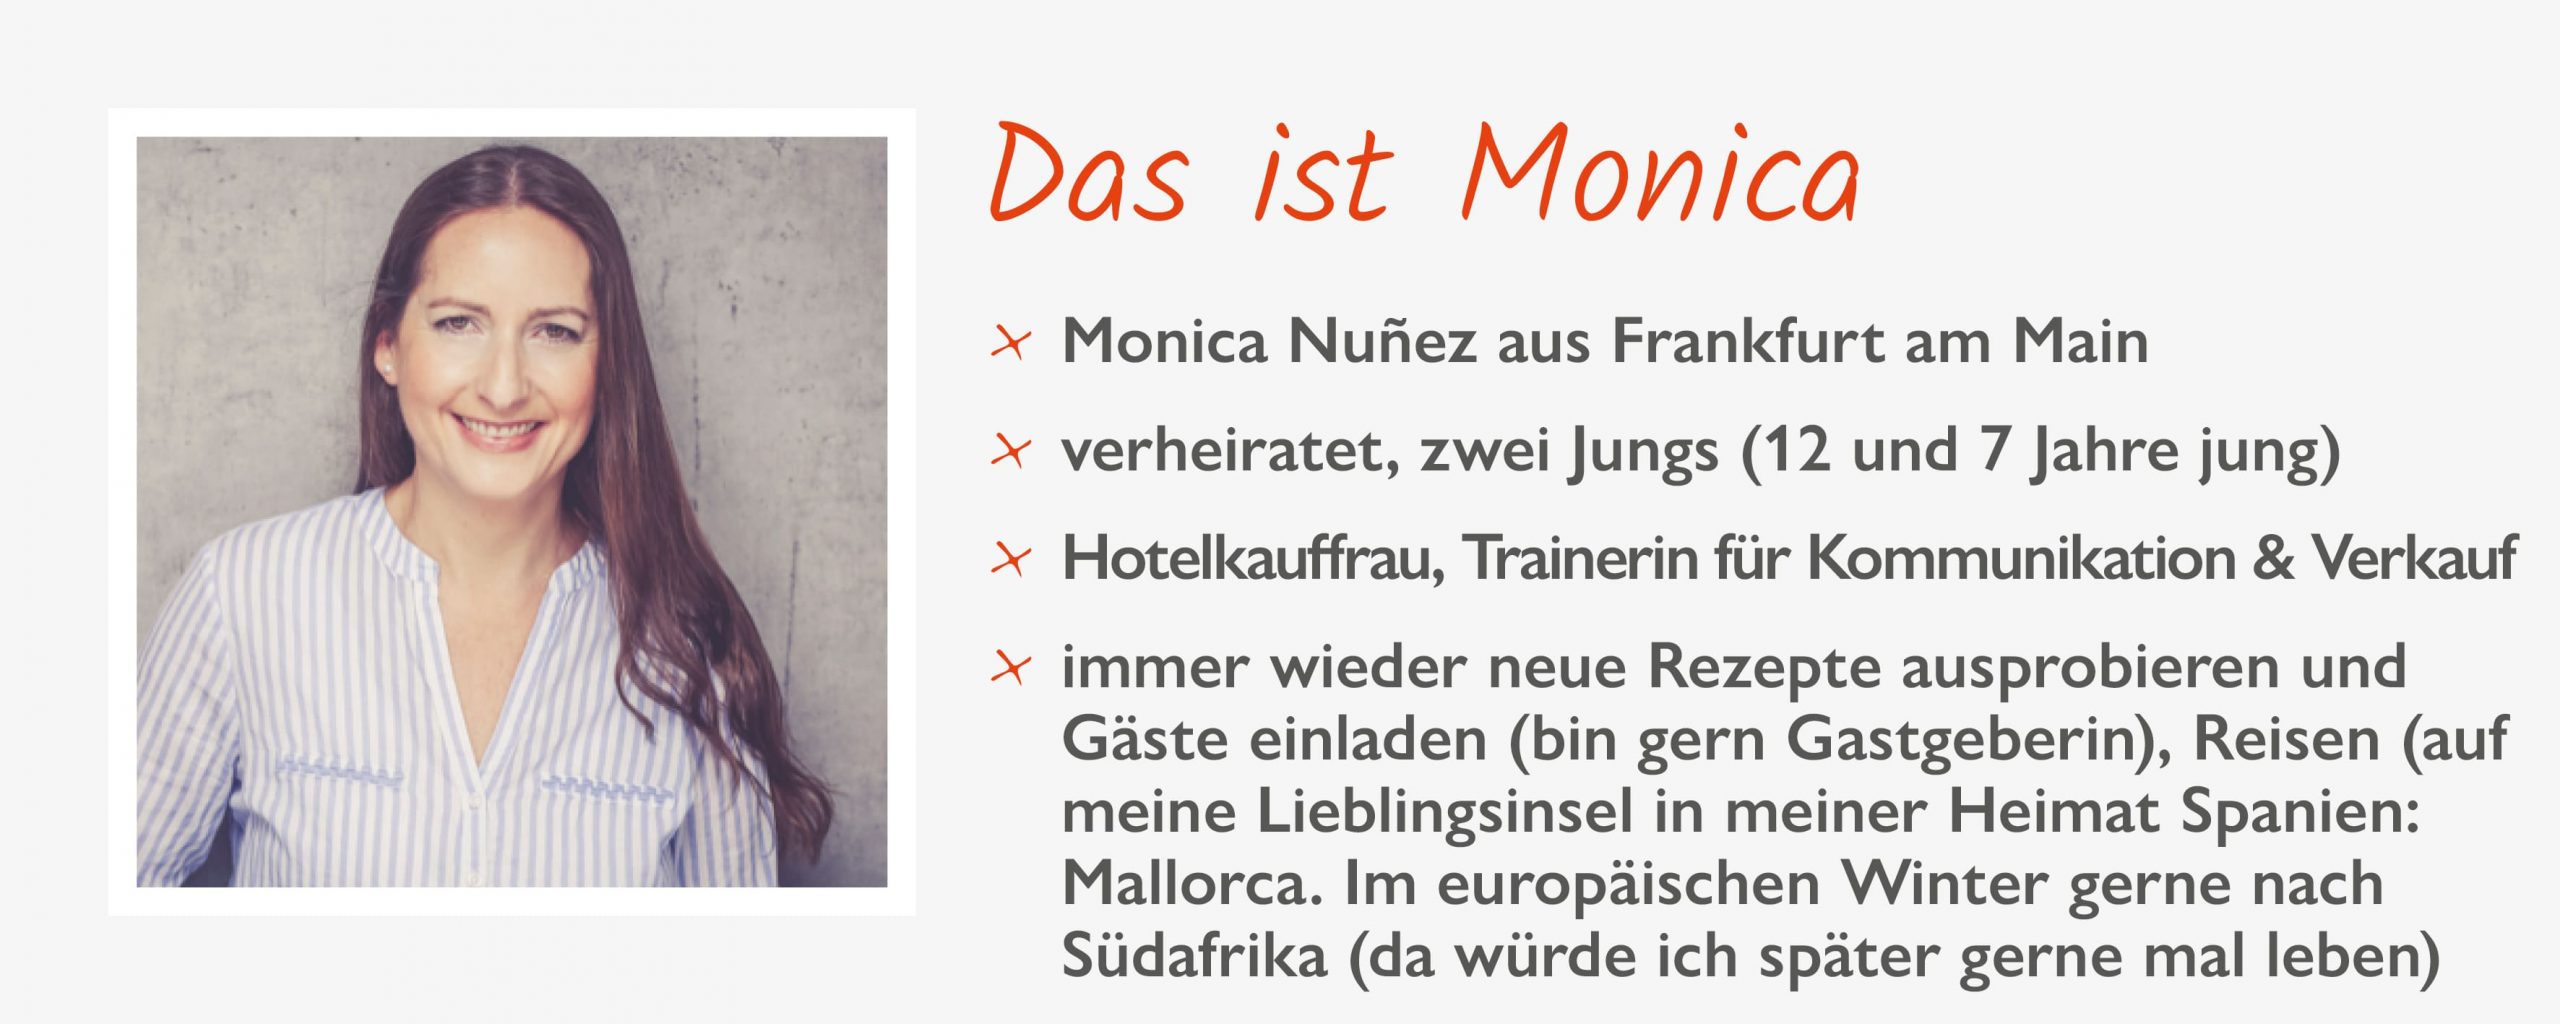 Monica Nuñez, Kundenservice by KommunikationsArt